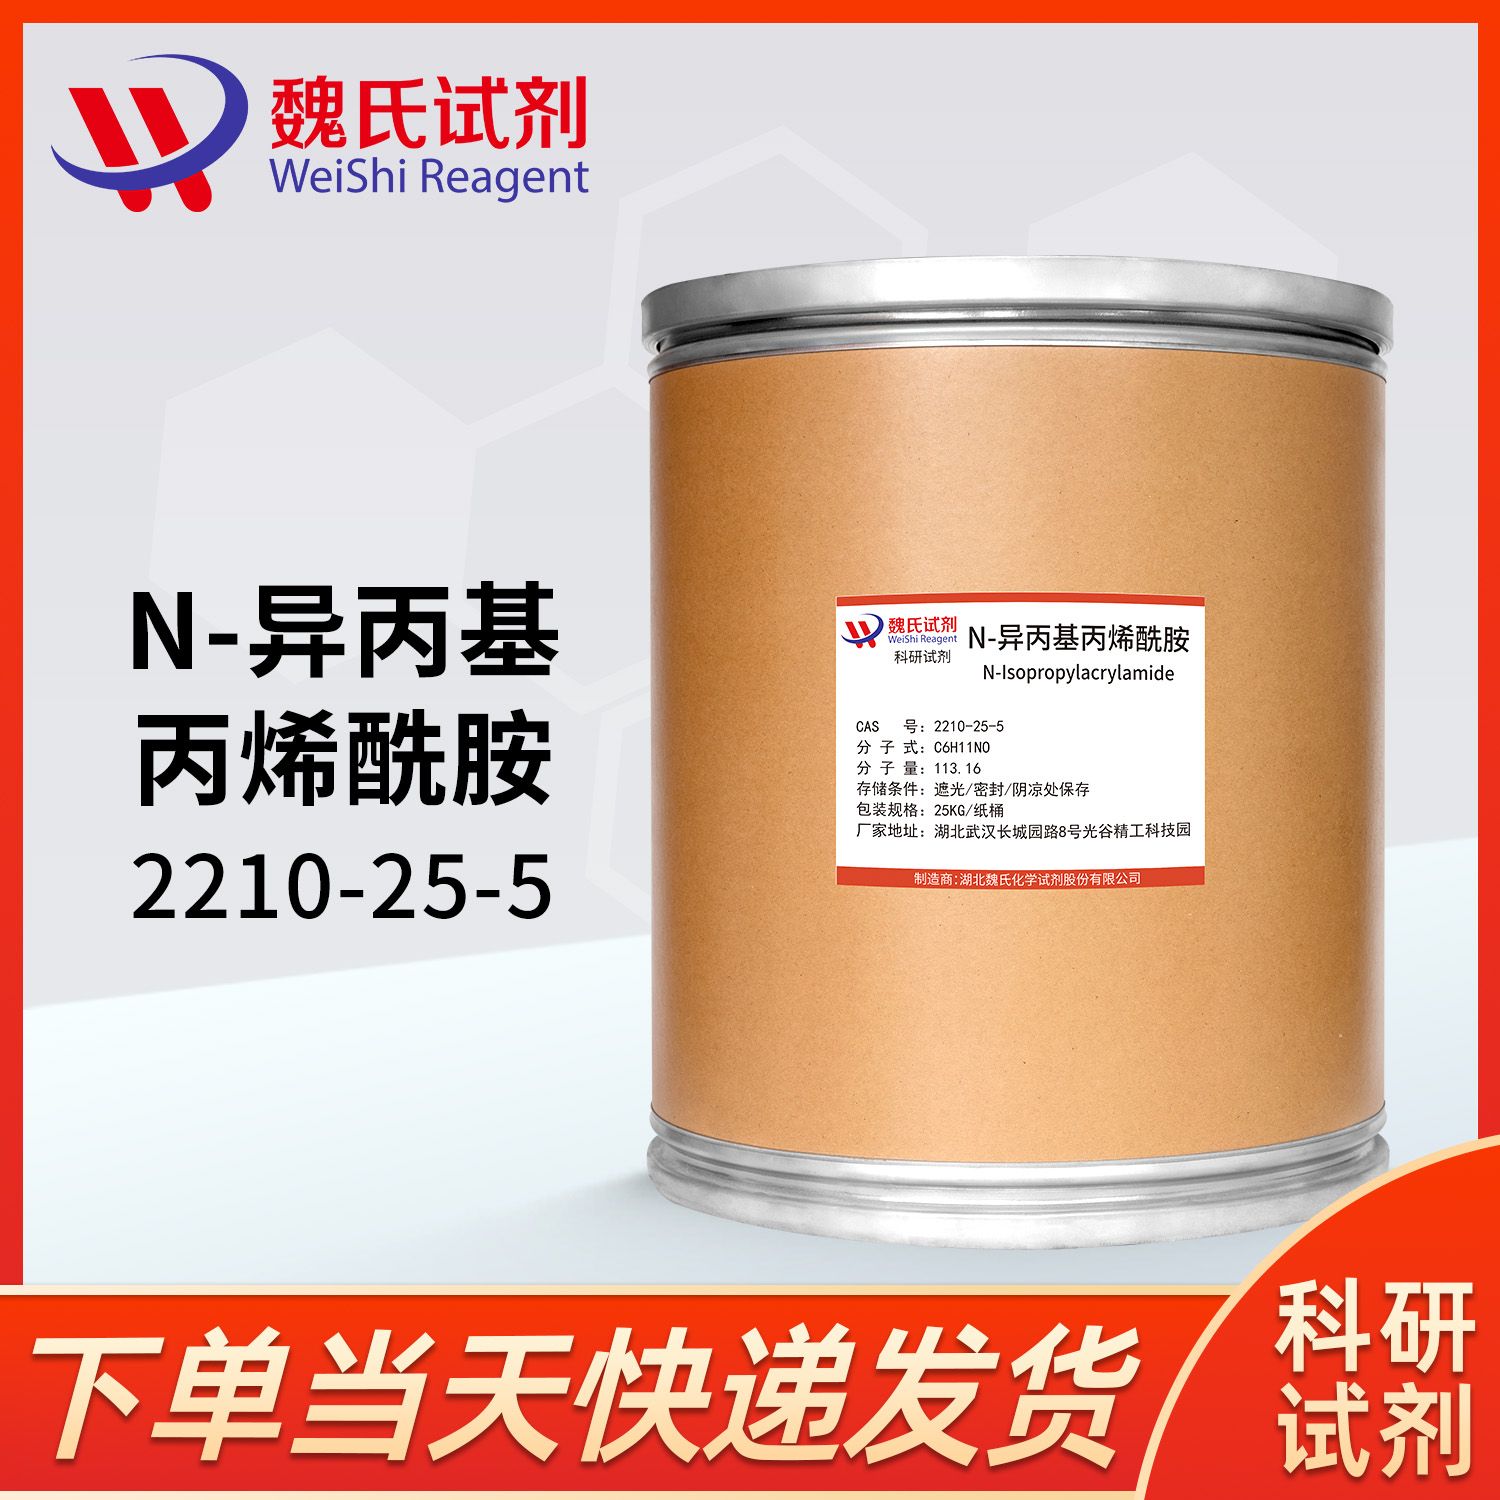 2210-25-5—N-Isopropylacrylamide